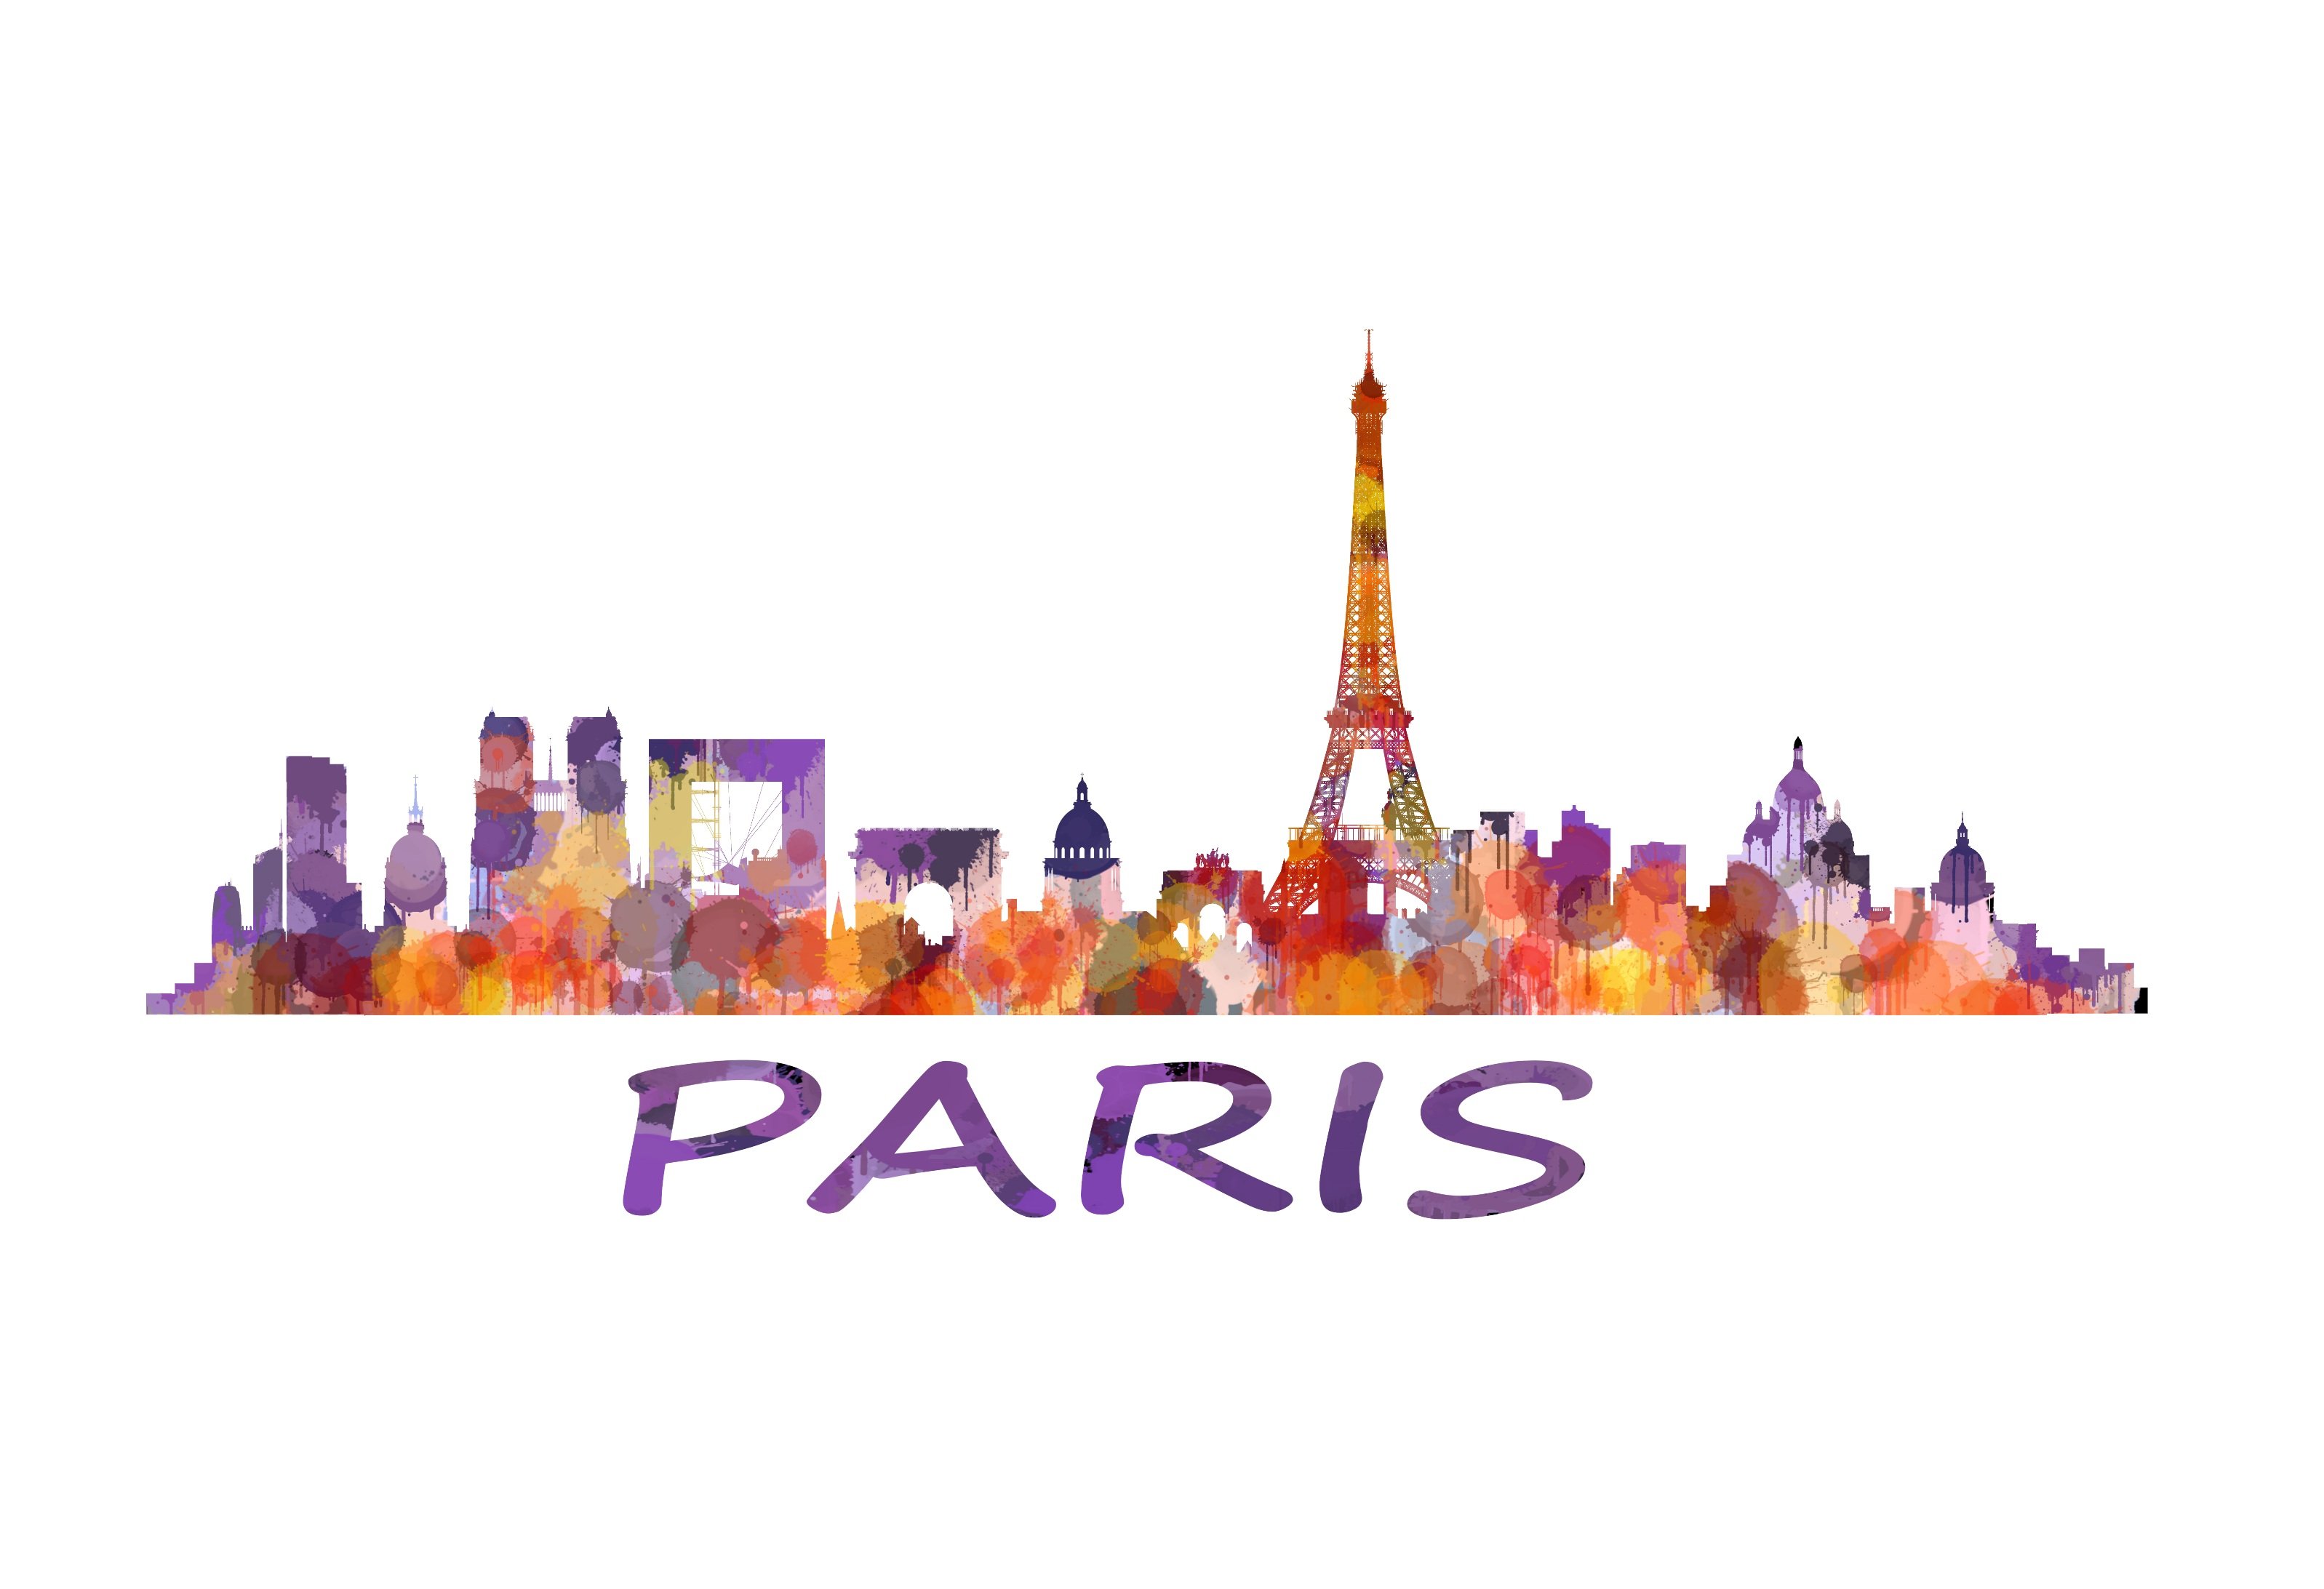 Paris Cityscape Skyline cover image.